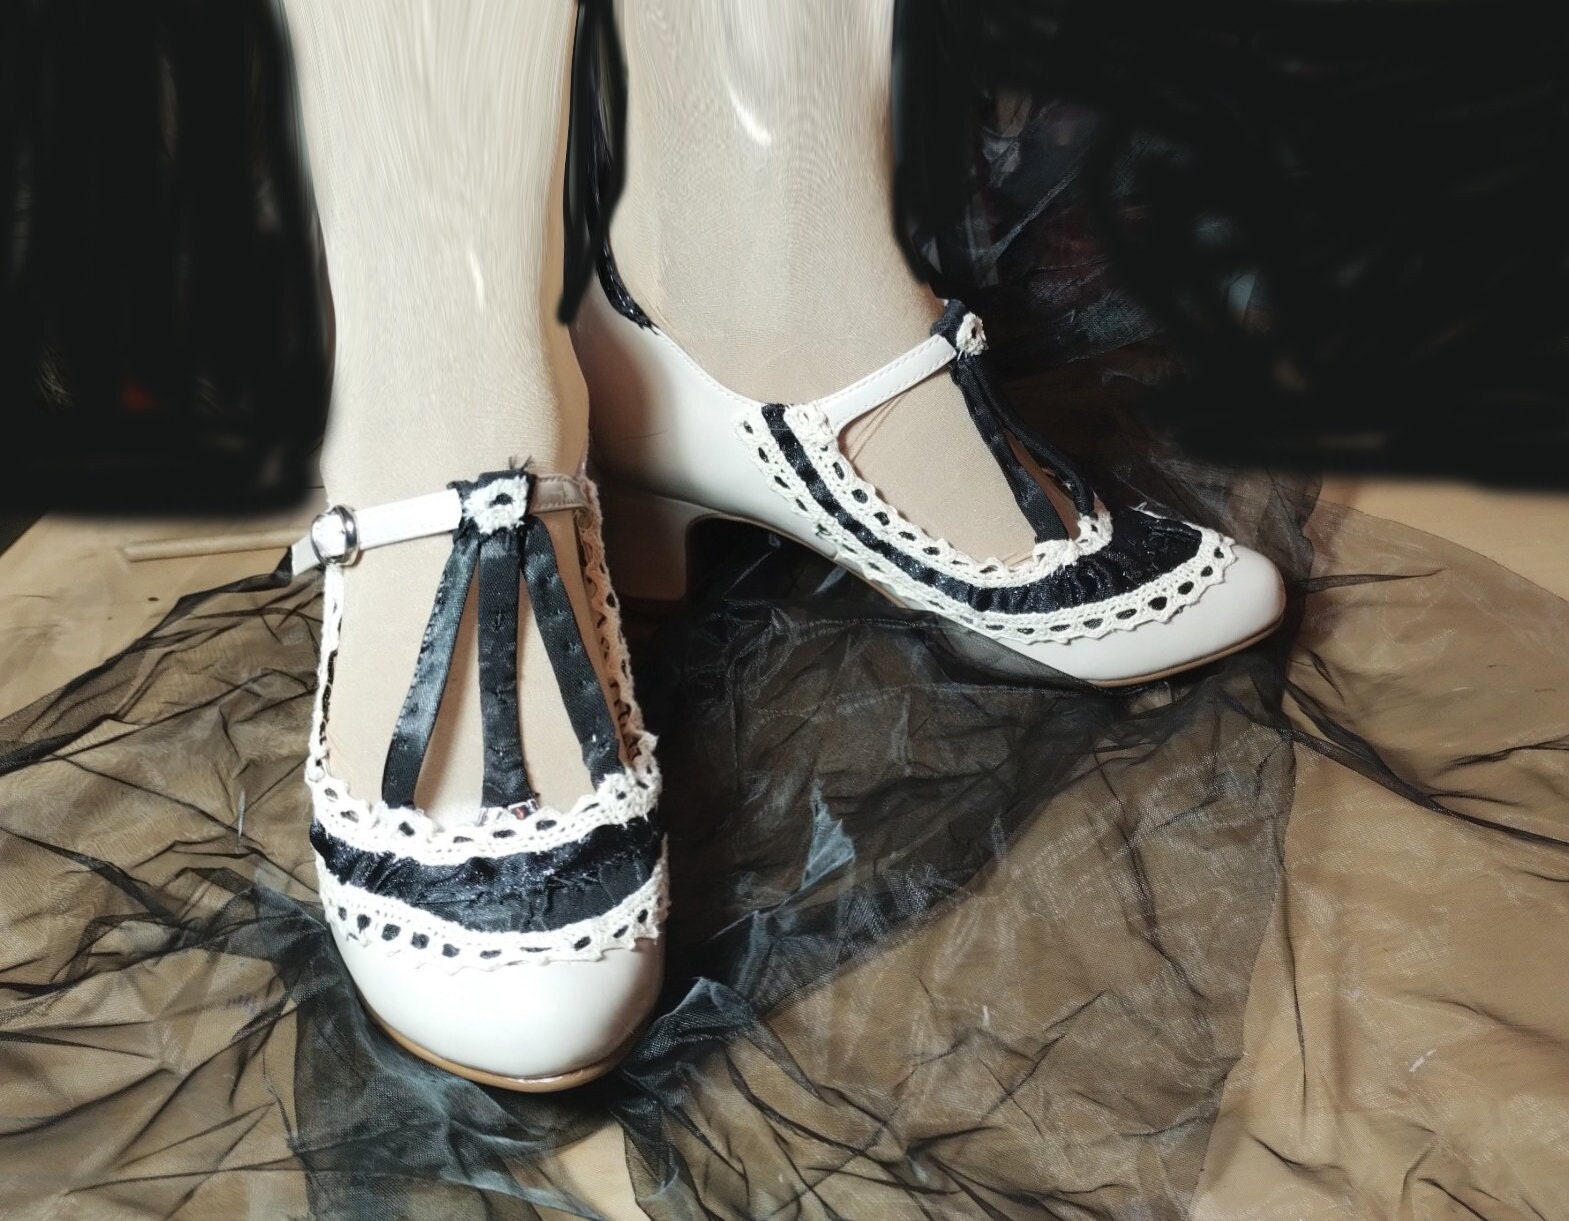 Chaussures à brides rétro type années 20